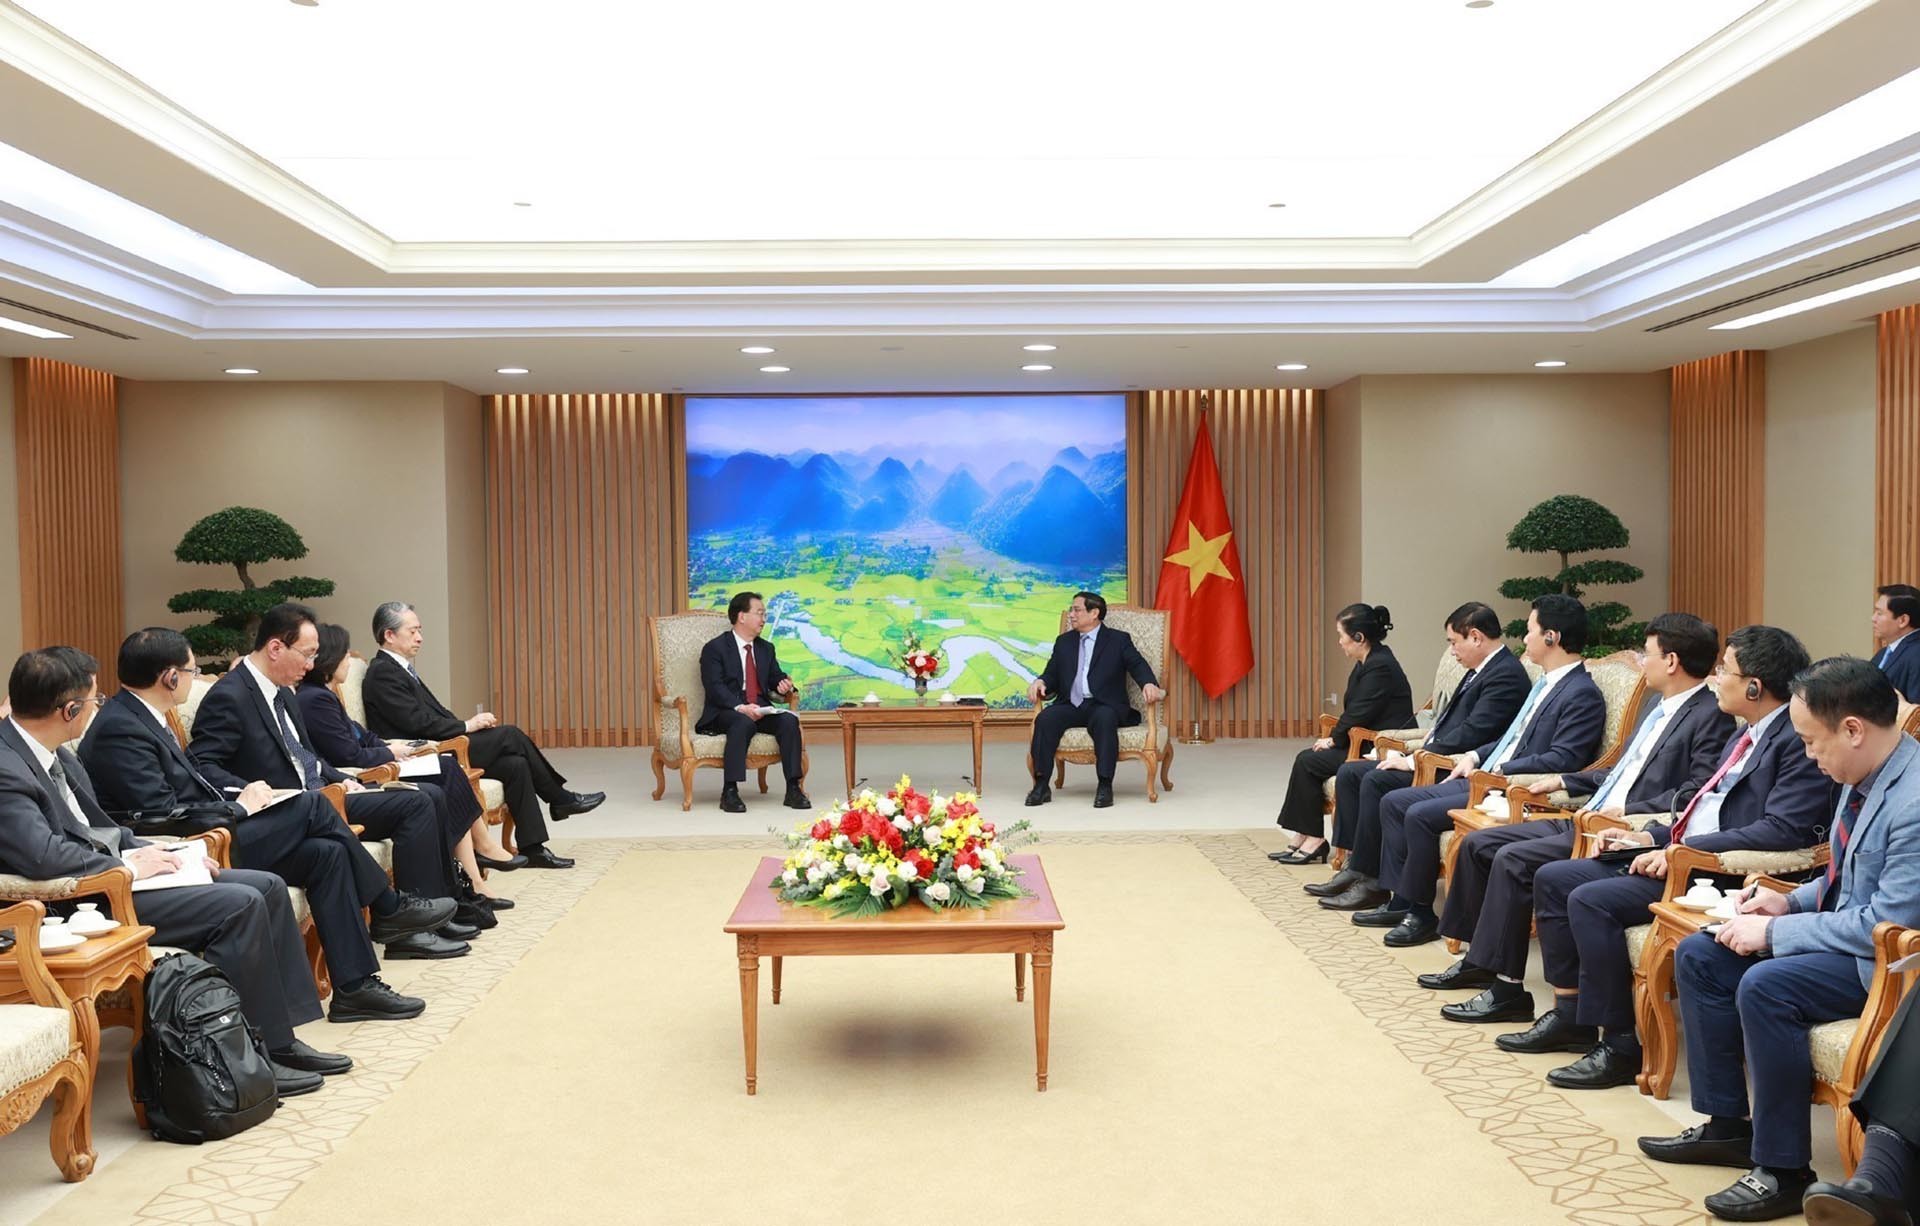 Đại sứ Phạm Sao Mai: Chuyến thăm của Thủ tướng Phạm Minh Chính thúc đẩy hợp tác cùng phát triển với Trung Quốc, góp phần tăng trưởng kinh tế thế giới